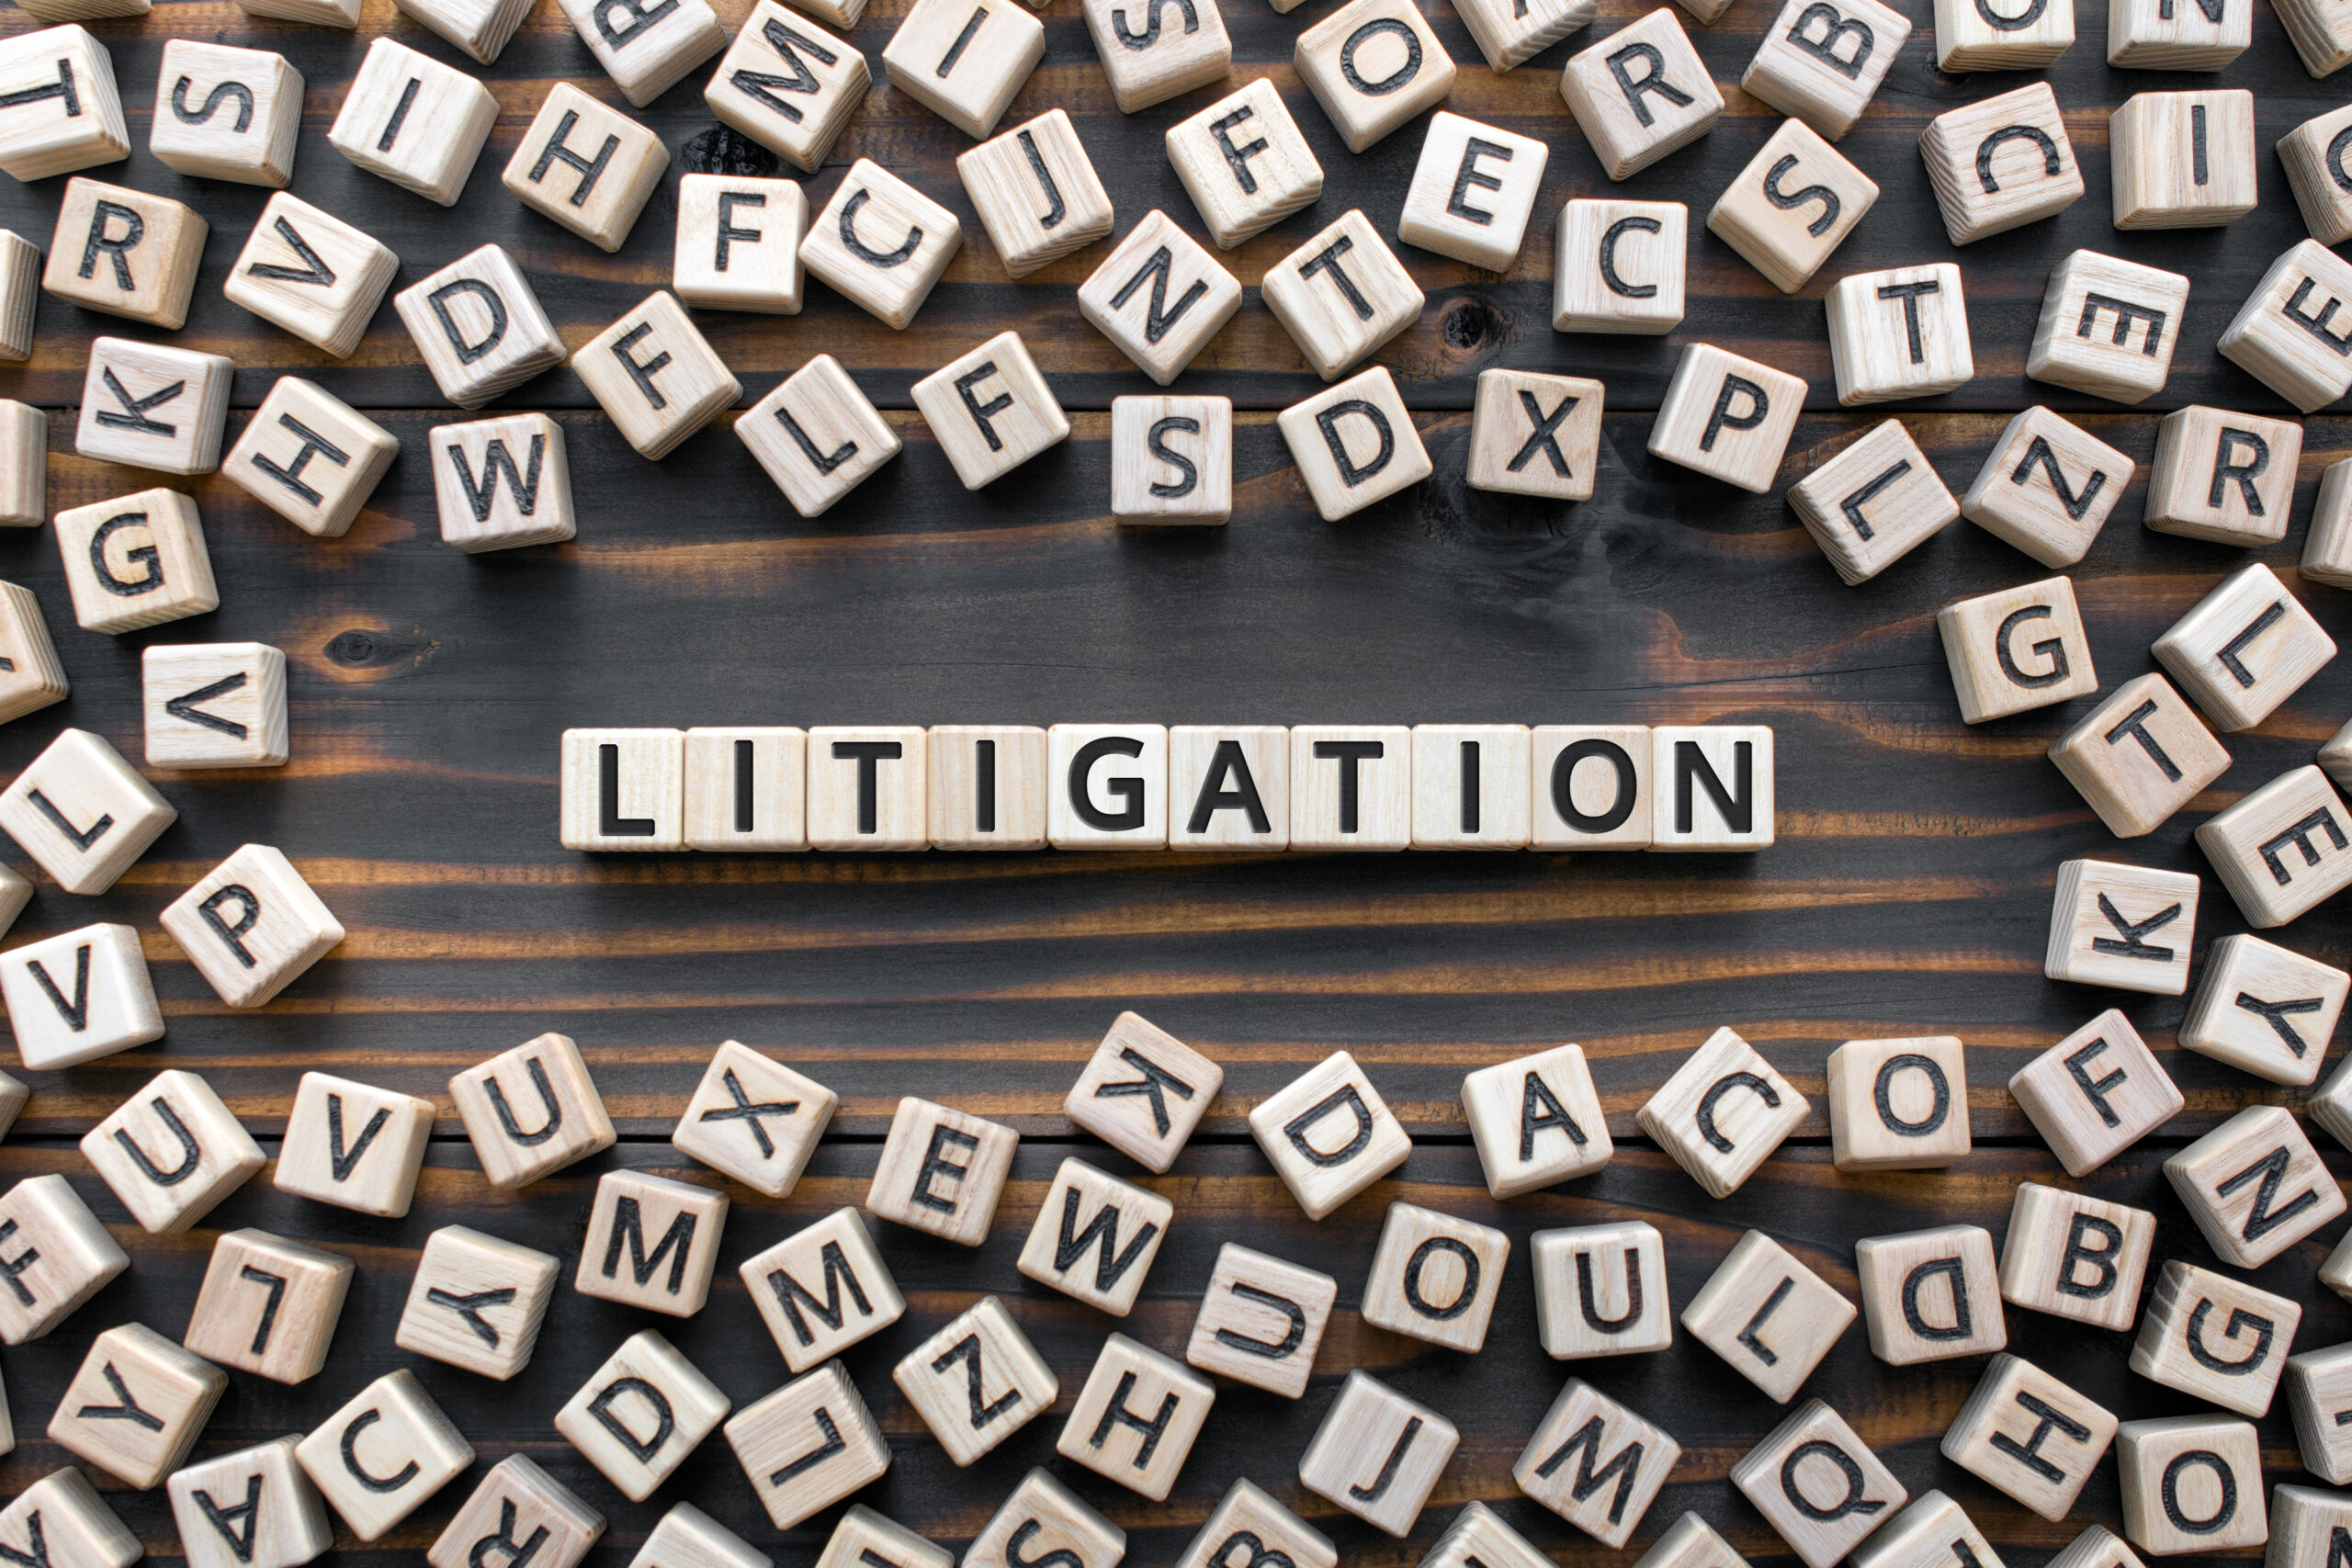 Litigation vs Arbitration